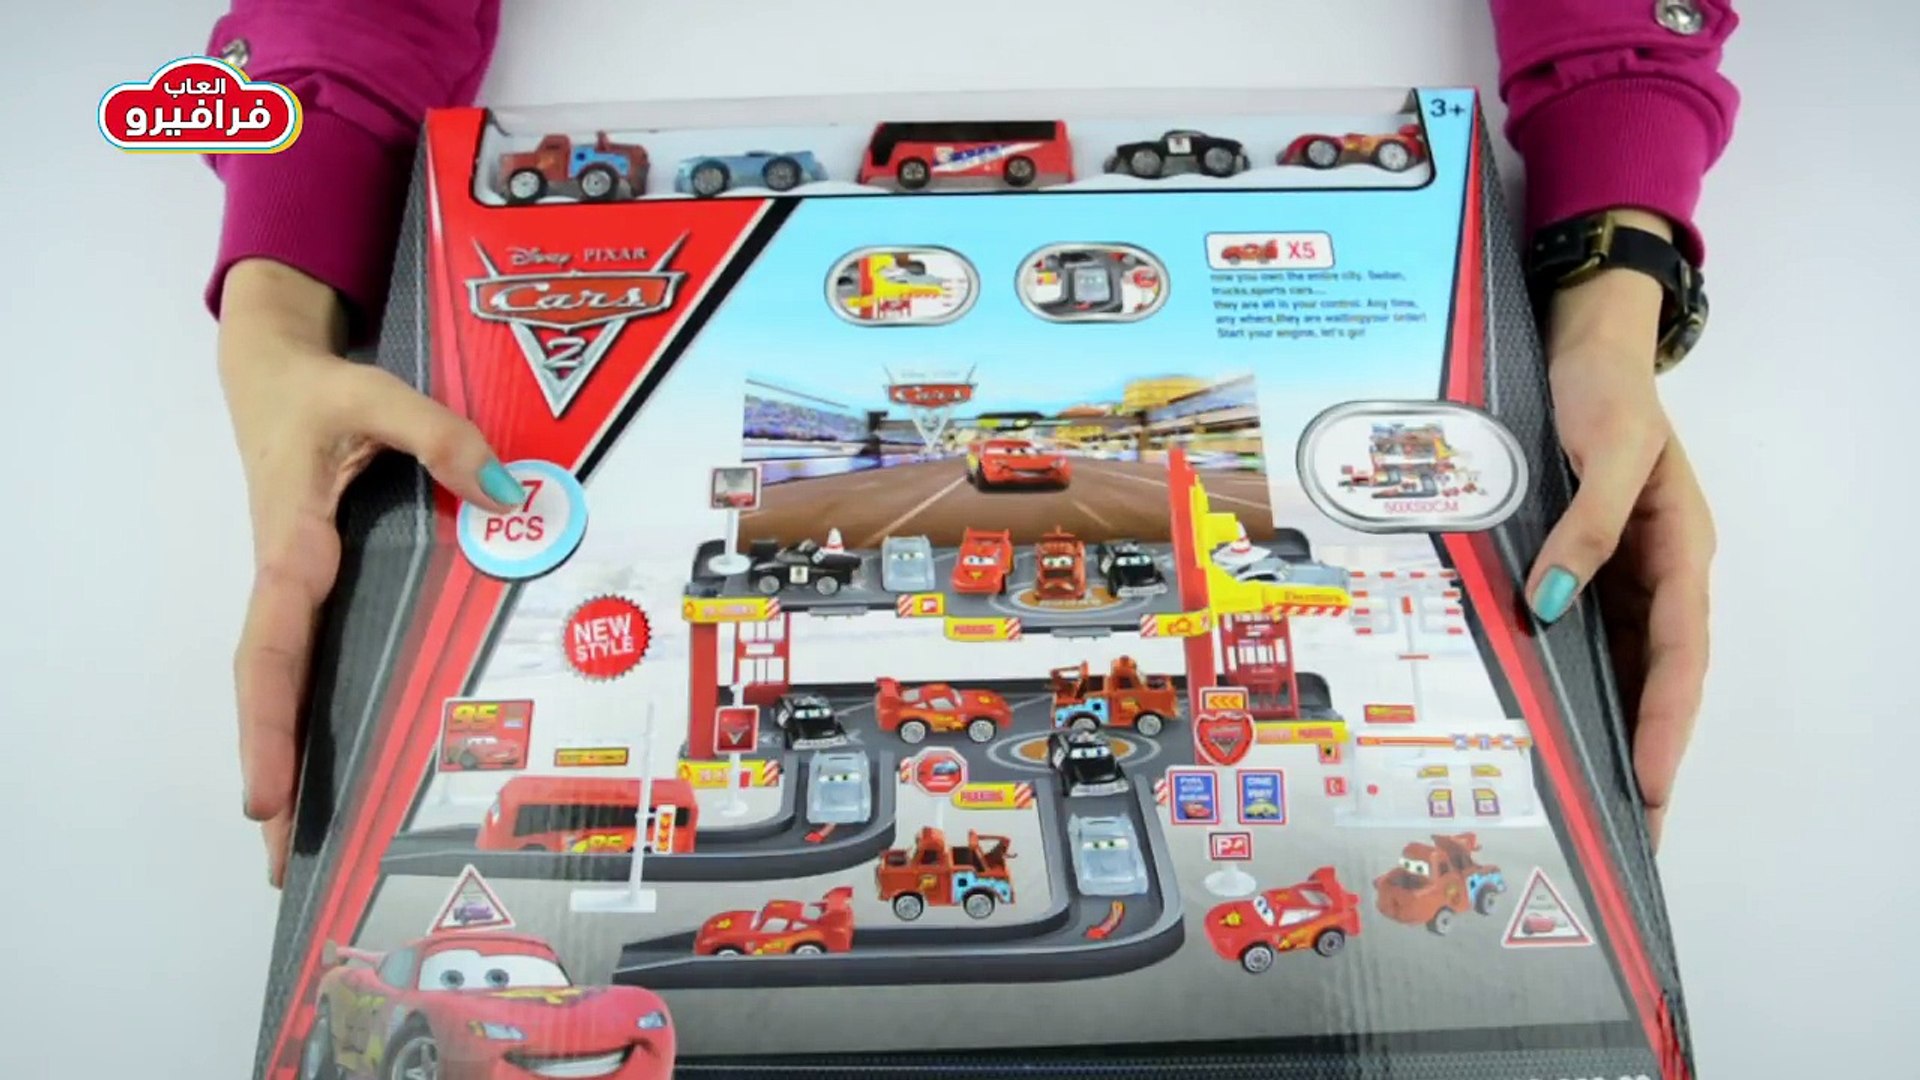 العاب اطفال سيارات ديزني برق بنزين باركينج | ألعاب سيارات سباق Disney Cars  2 Parking Game @Farafero - video Dailymotion